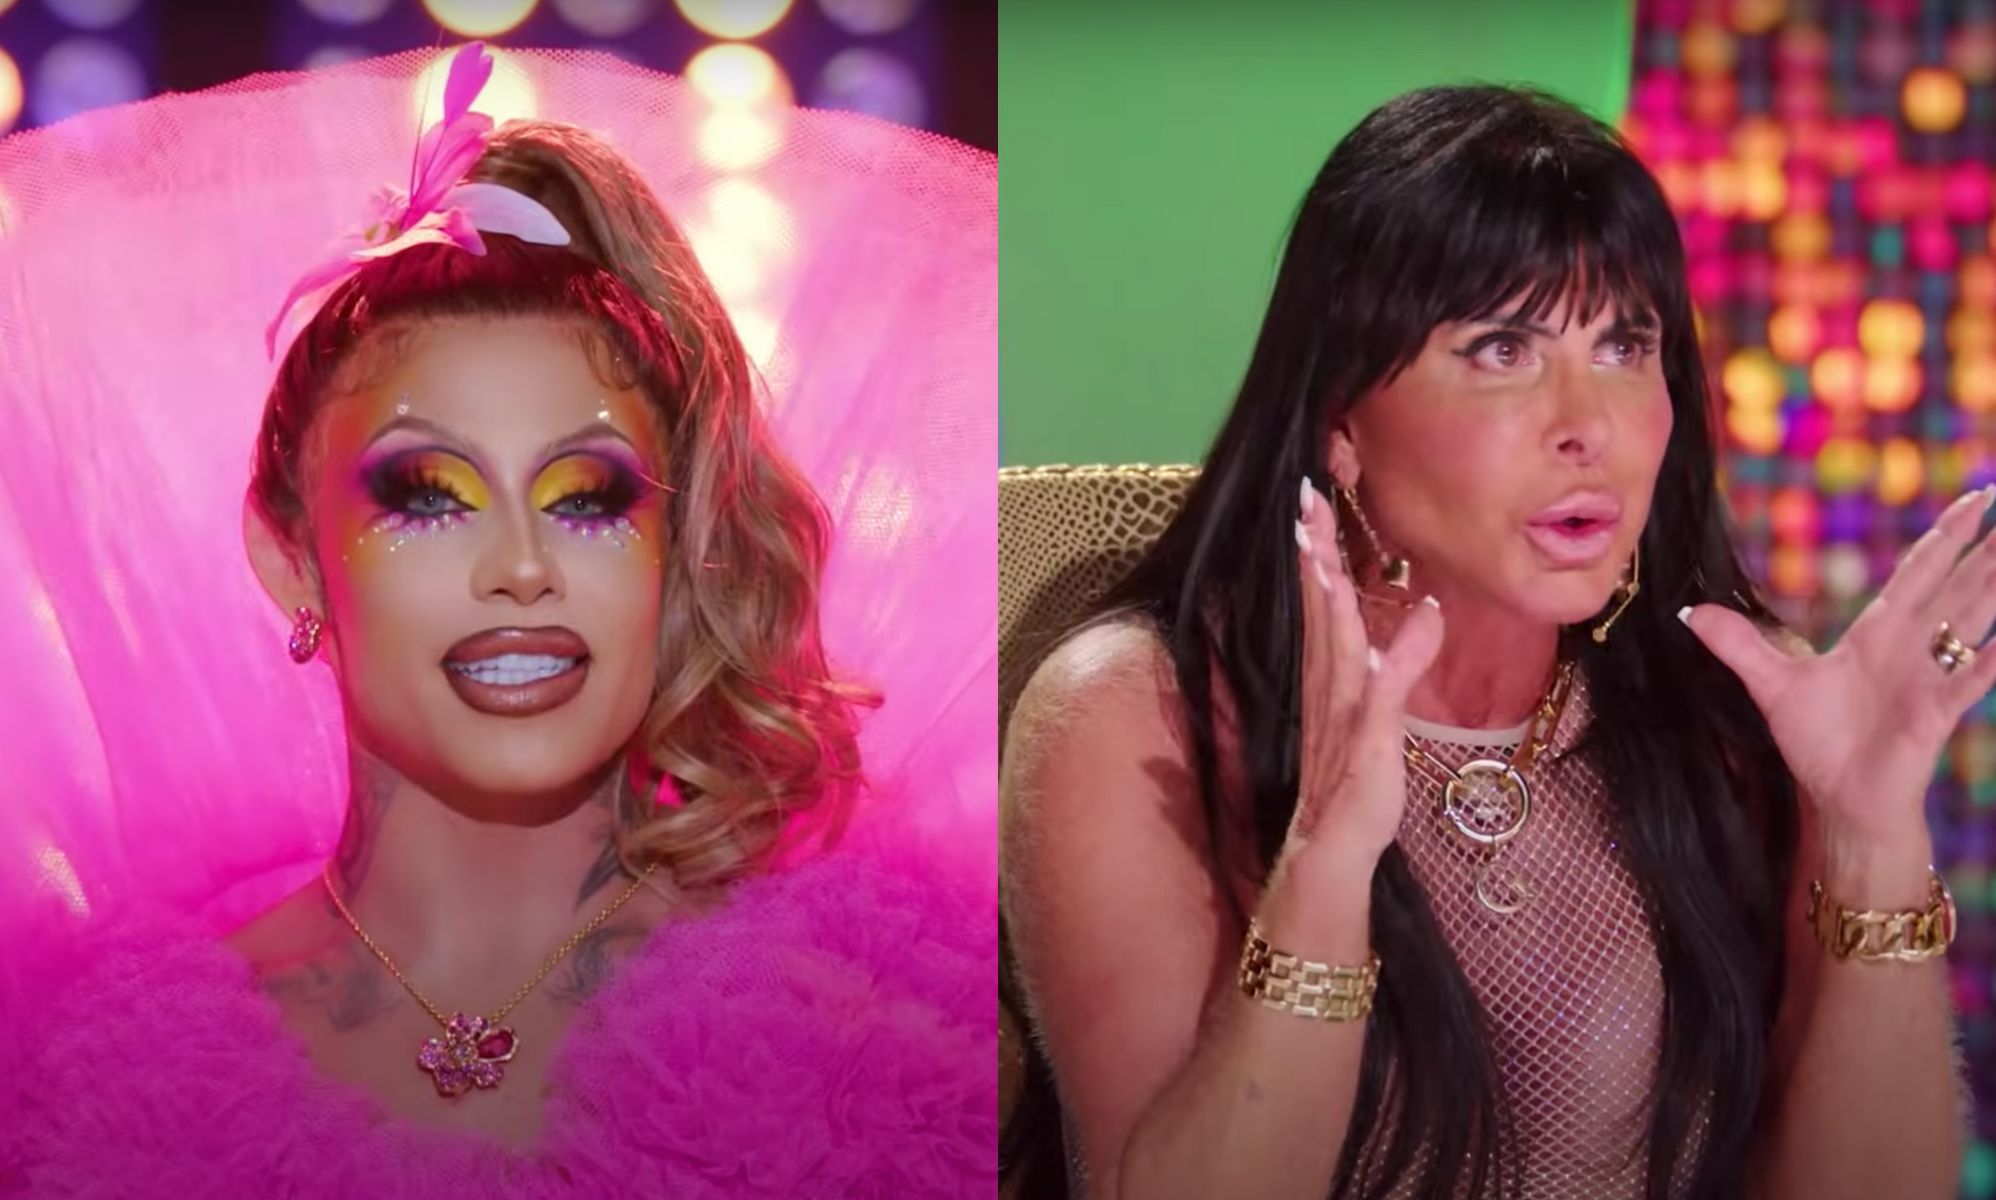 The Winner of 'Drag Race Brasil' Season 1 is Revealed